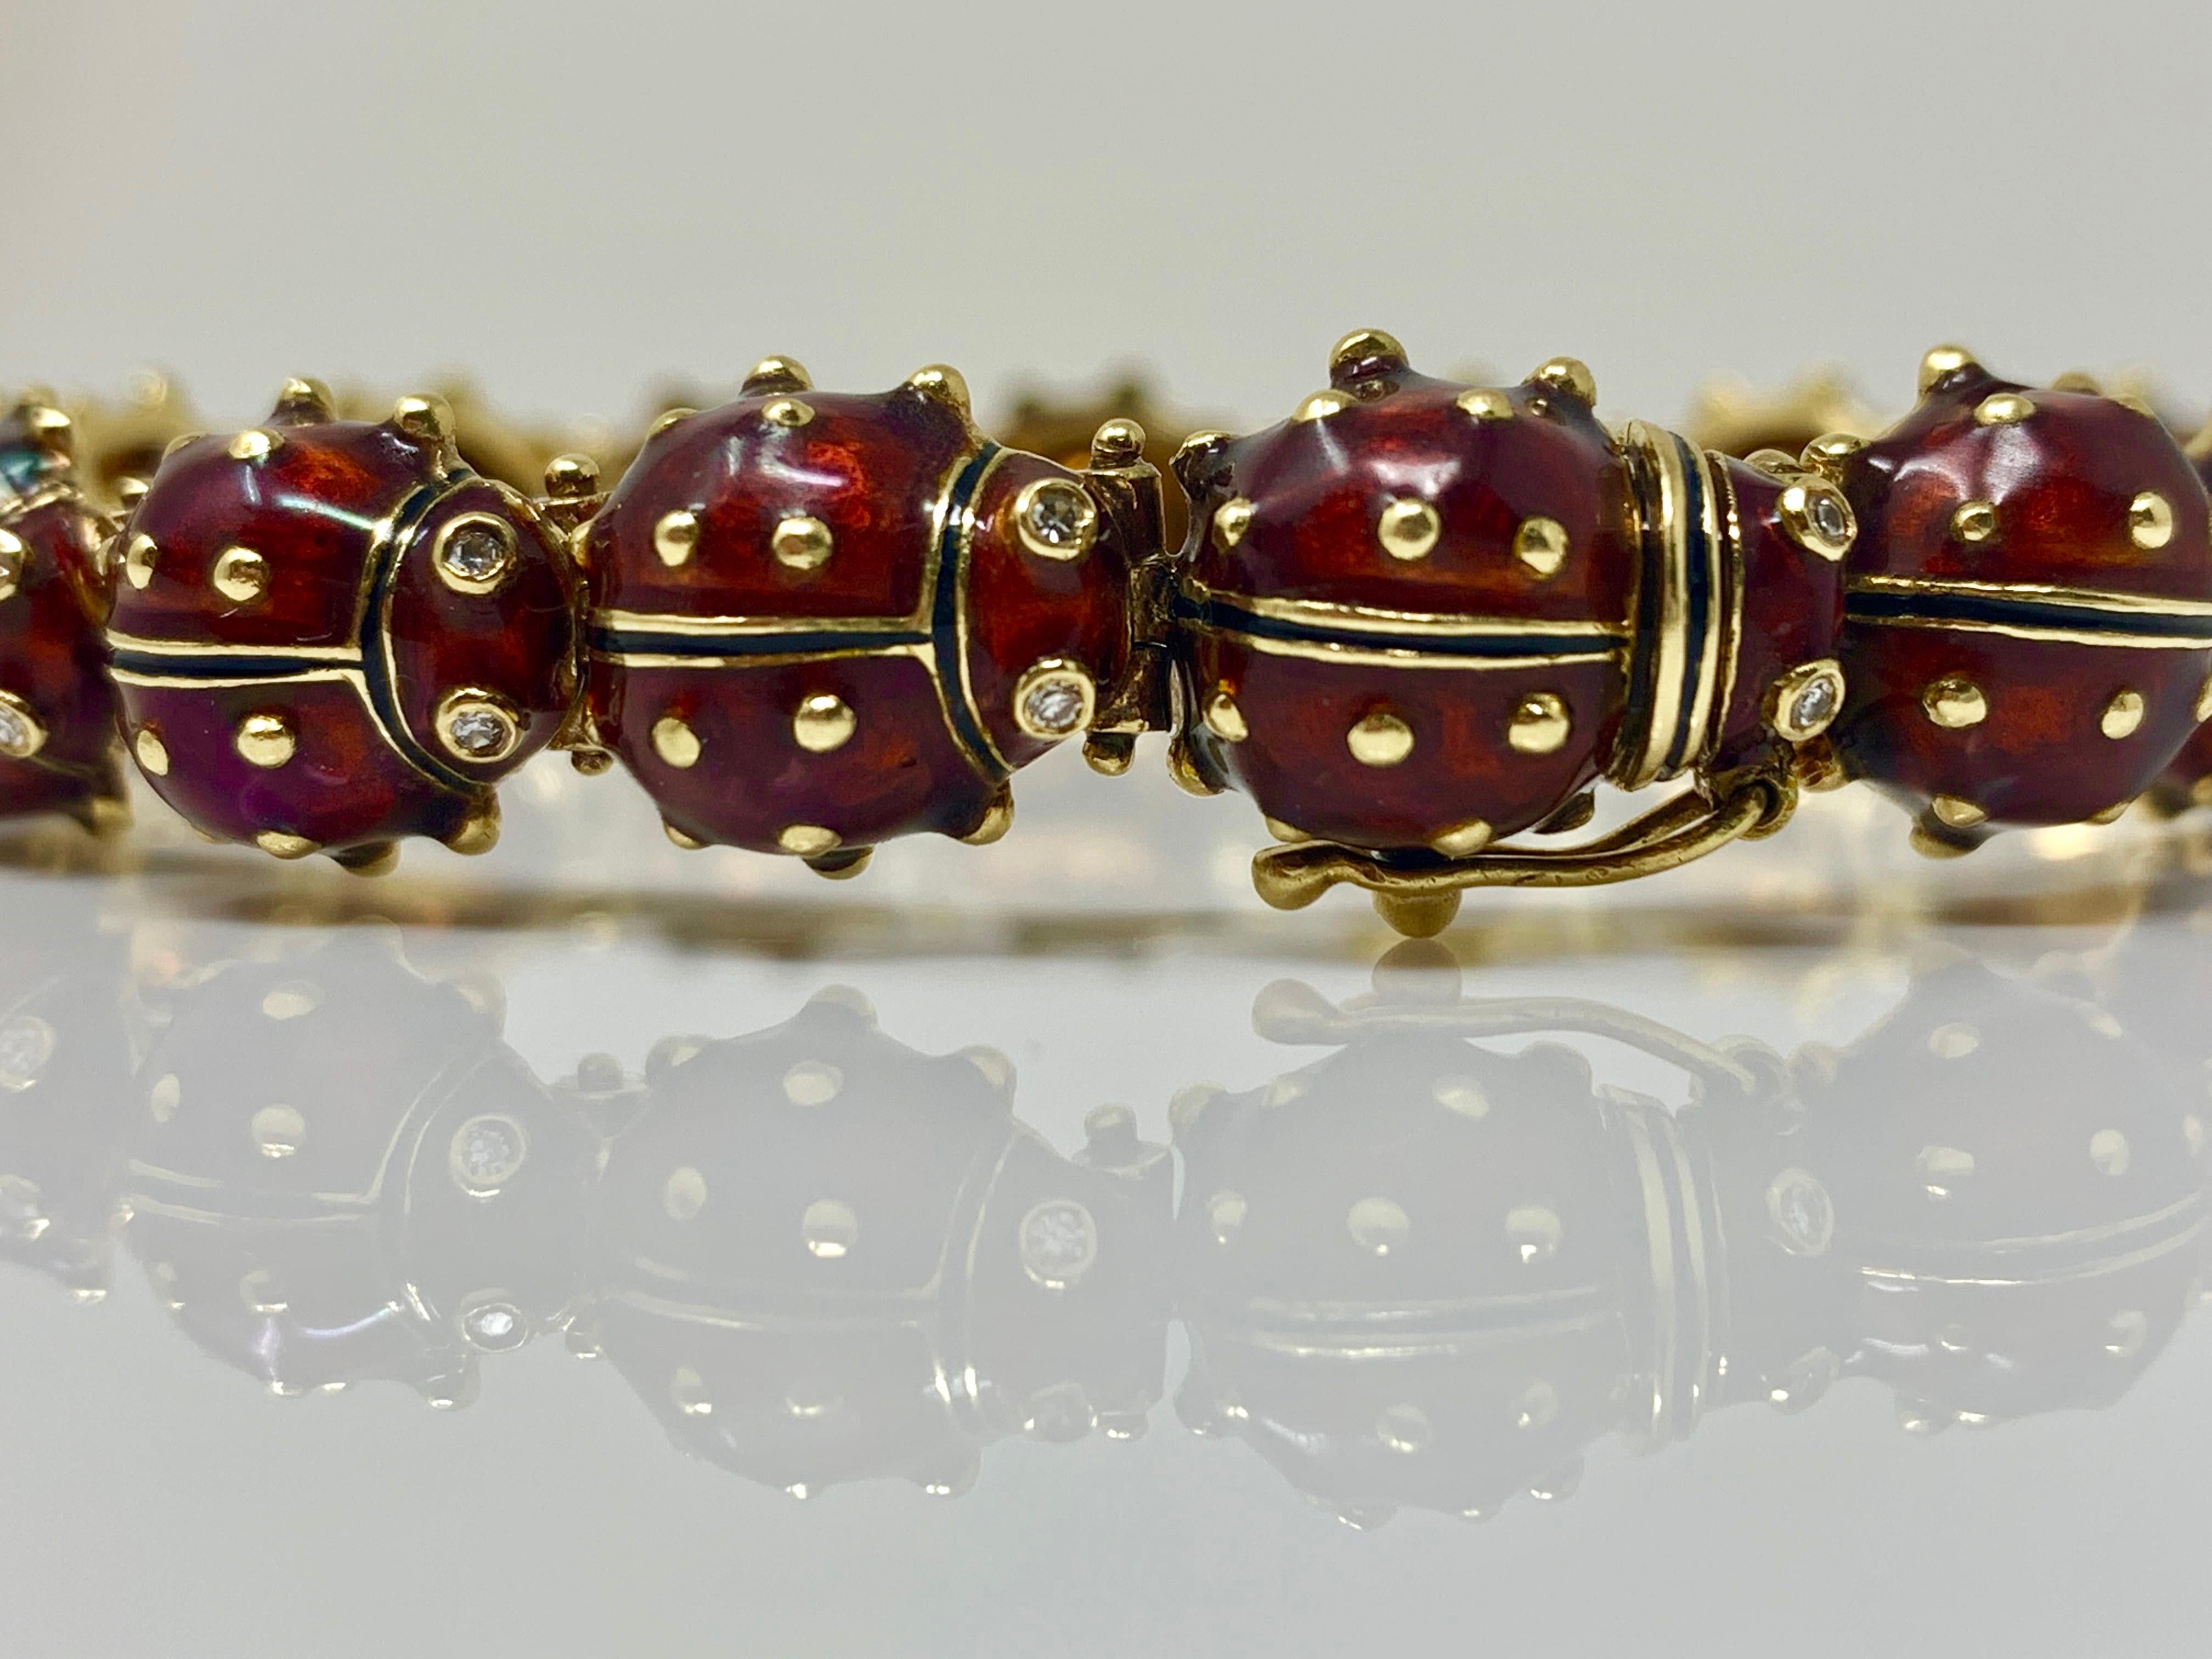 lady bug bracelet